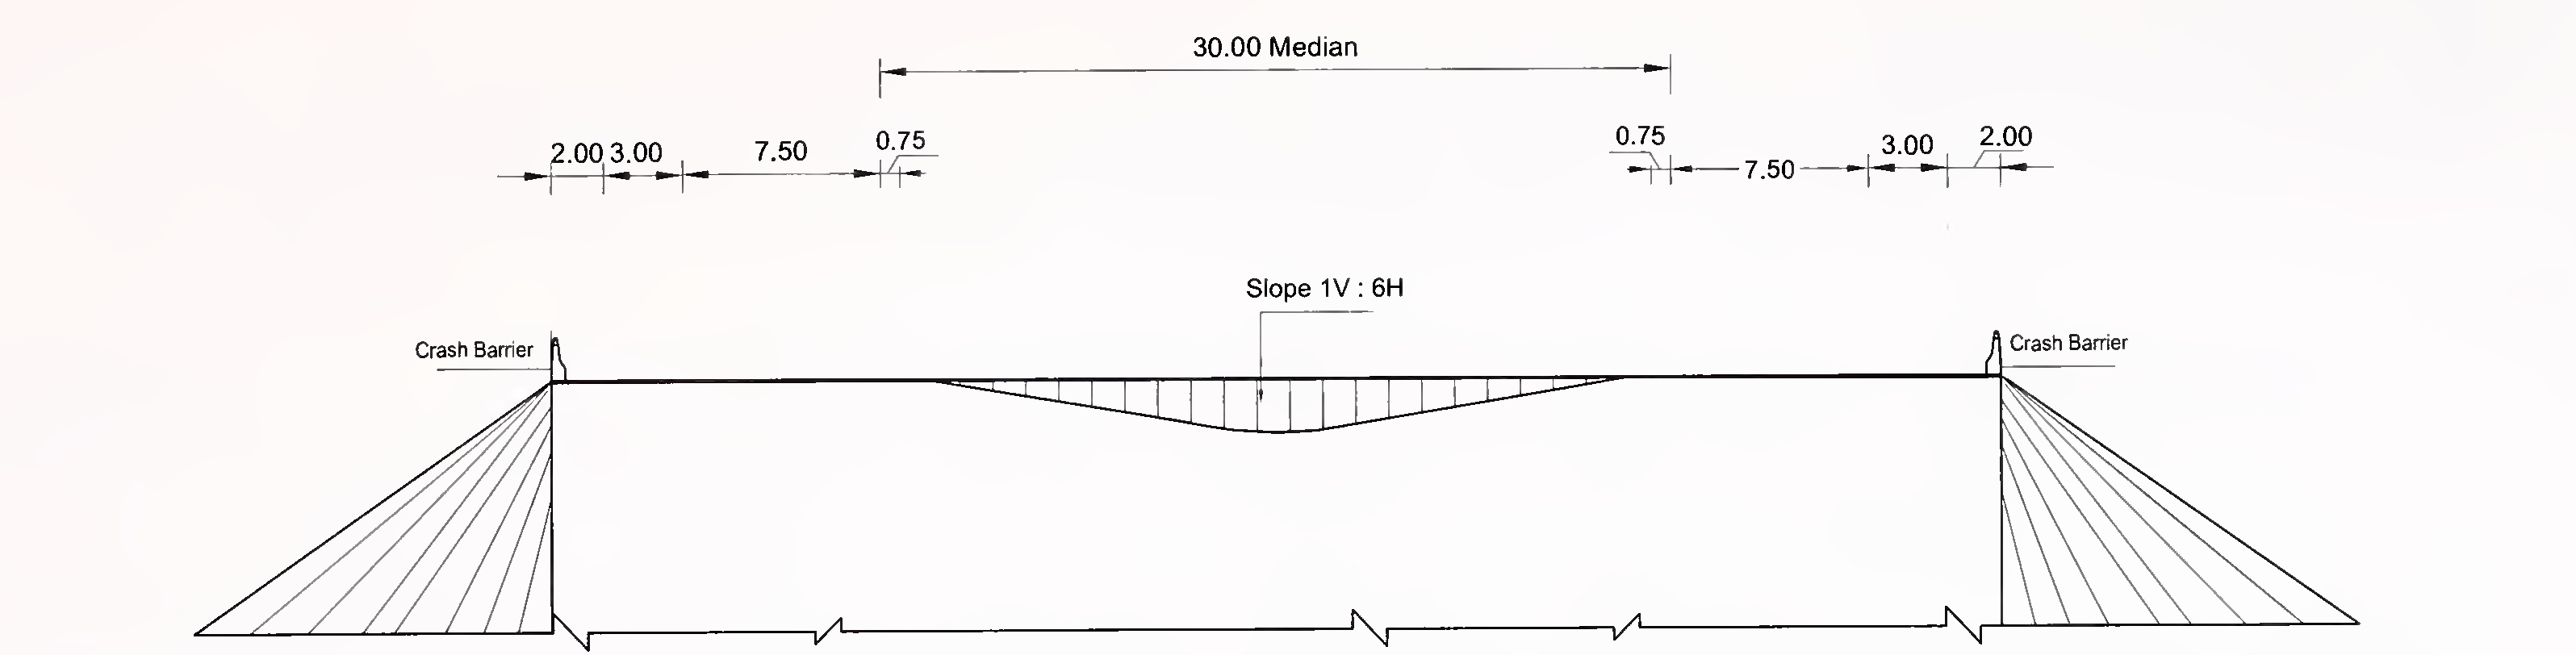 ਚਿੱਤਰ 6.3 (ਏ) ਸਲੈਬ ਦਾ ਖਾਸ ਕਰਾਸ-ਸੈਕਸ਼ਨ ਅਤੇ 4-ਲੇਨ ਲਈ ਬਾਕਸ ਟਾਈਪ ਕੁਲਵਰਟ (2 × 2) ਐਕਸਪ੍ਰੈਸ ਵੇਅ ਉਦਾਸੀ ਦੇ ਨਾਲ